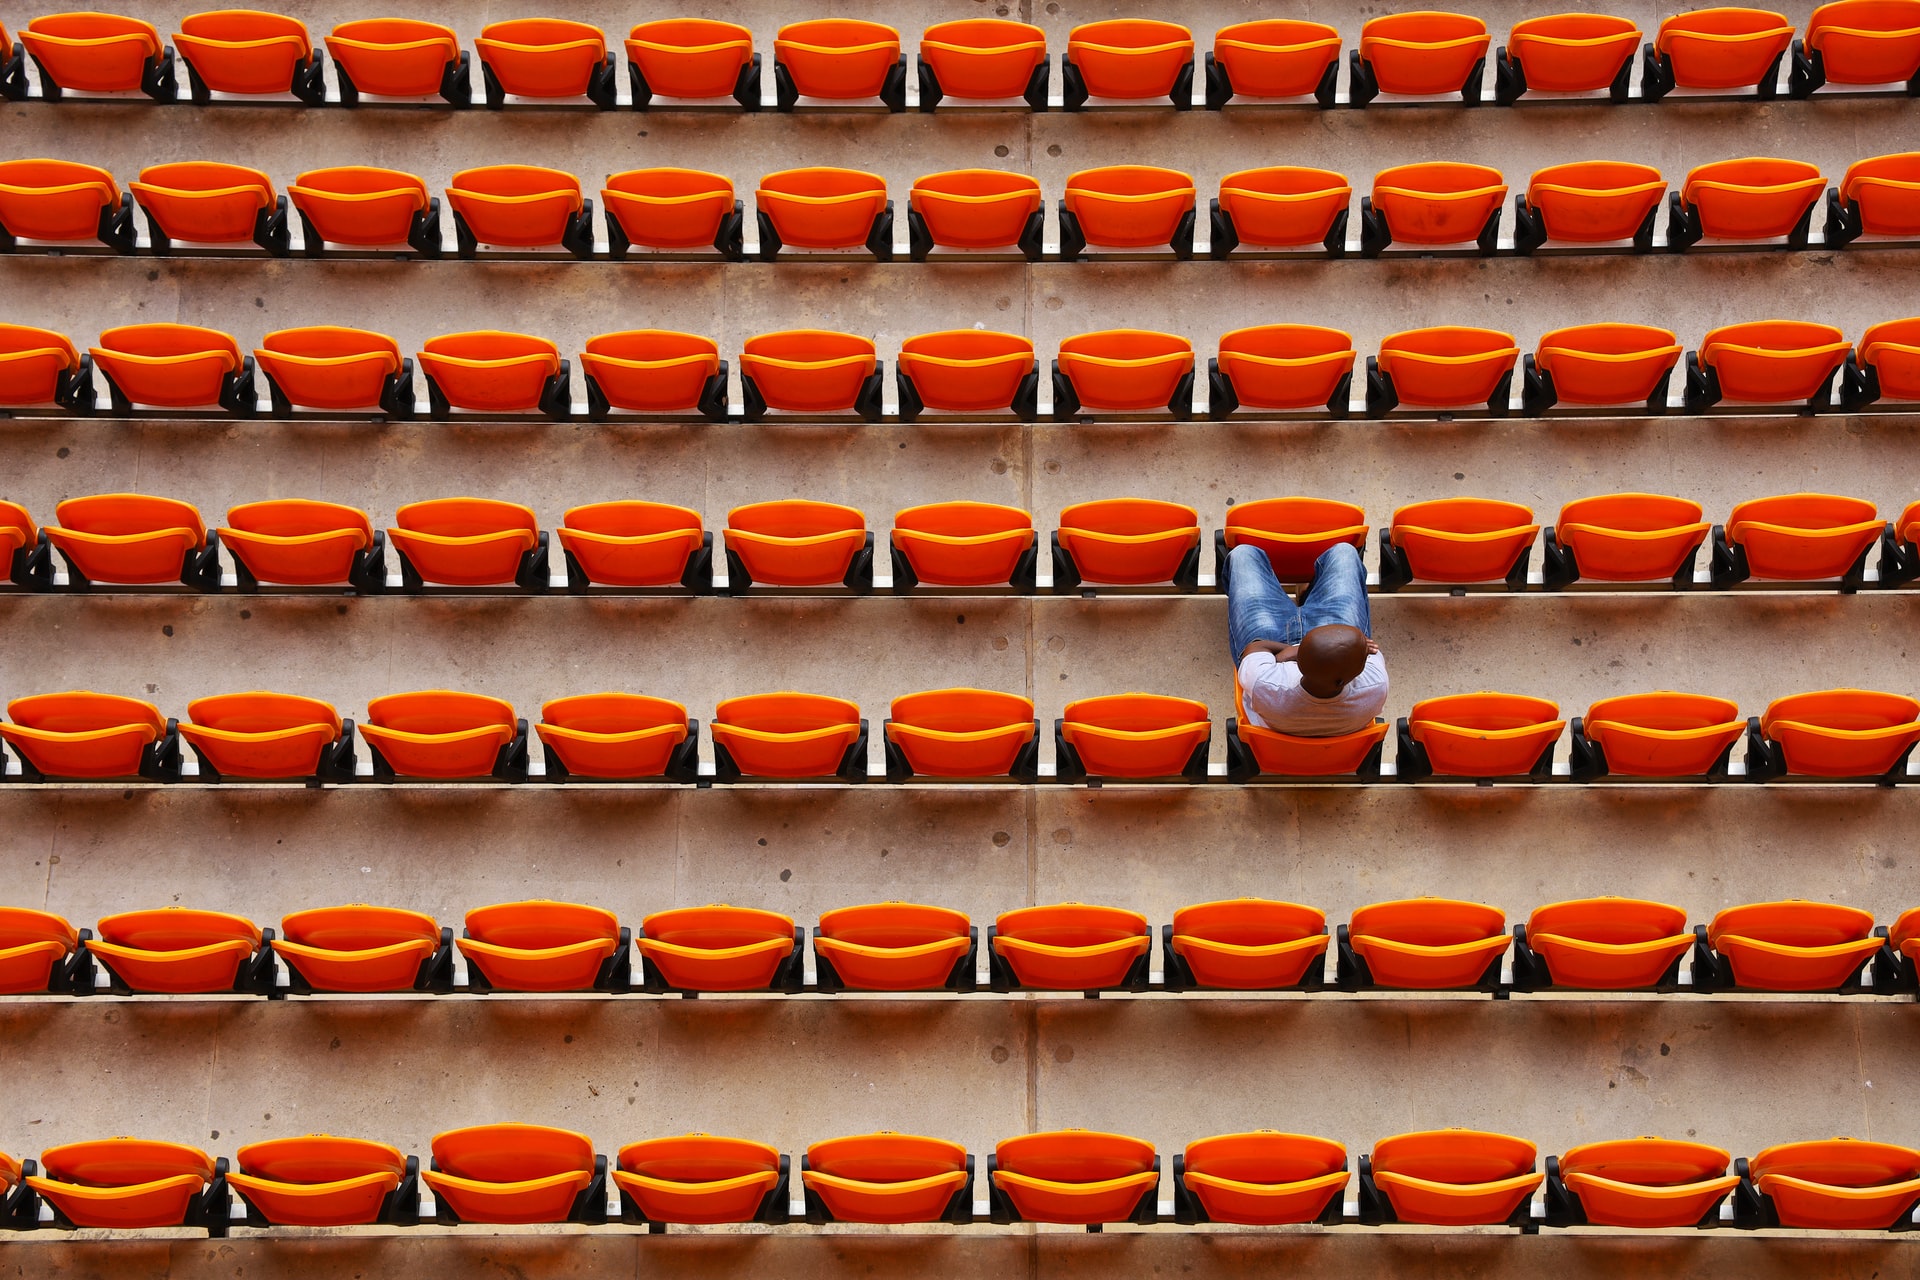 Pattern of stadium seats